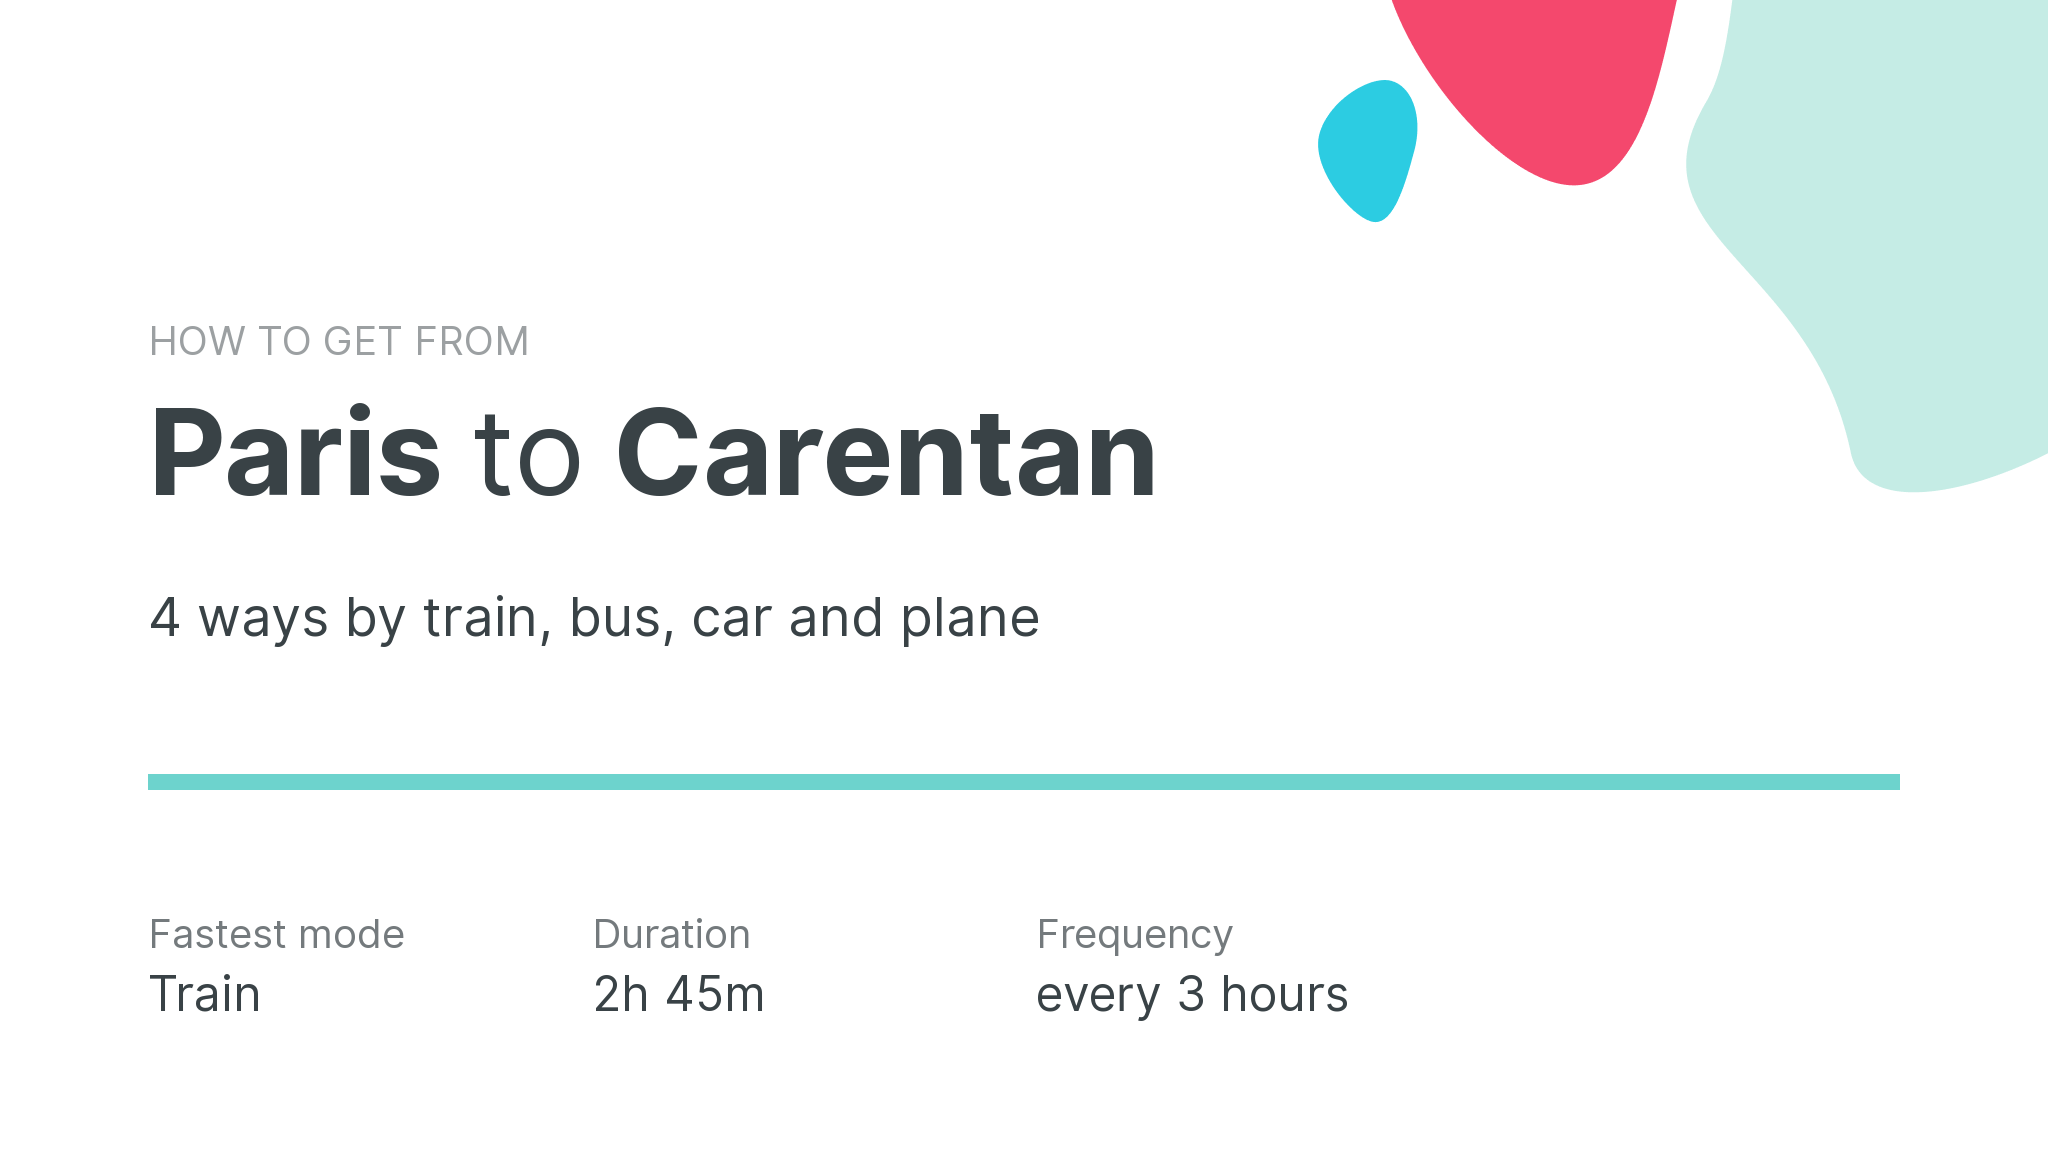 How do I get from Paris to Carentan